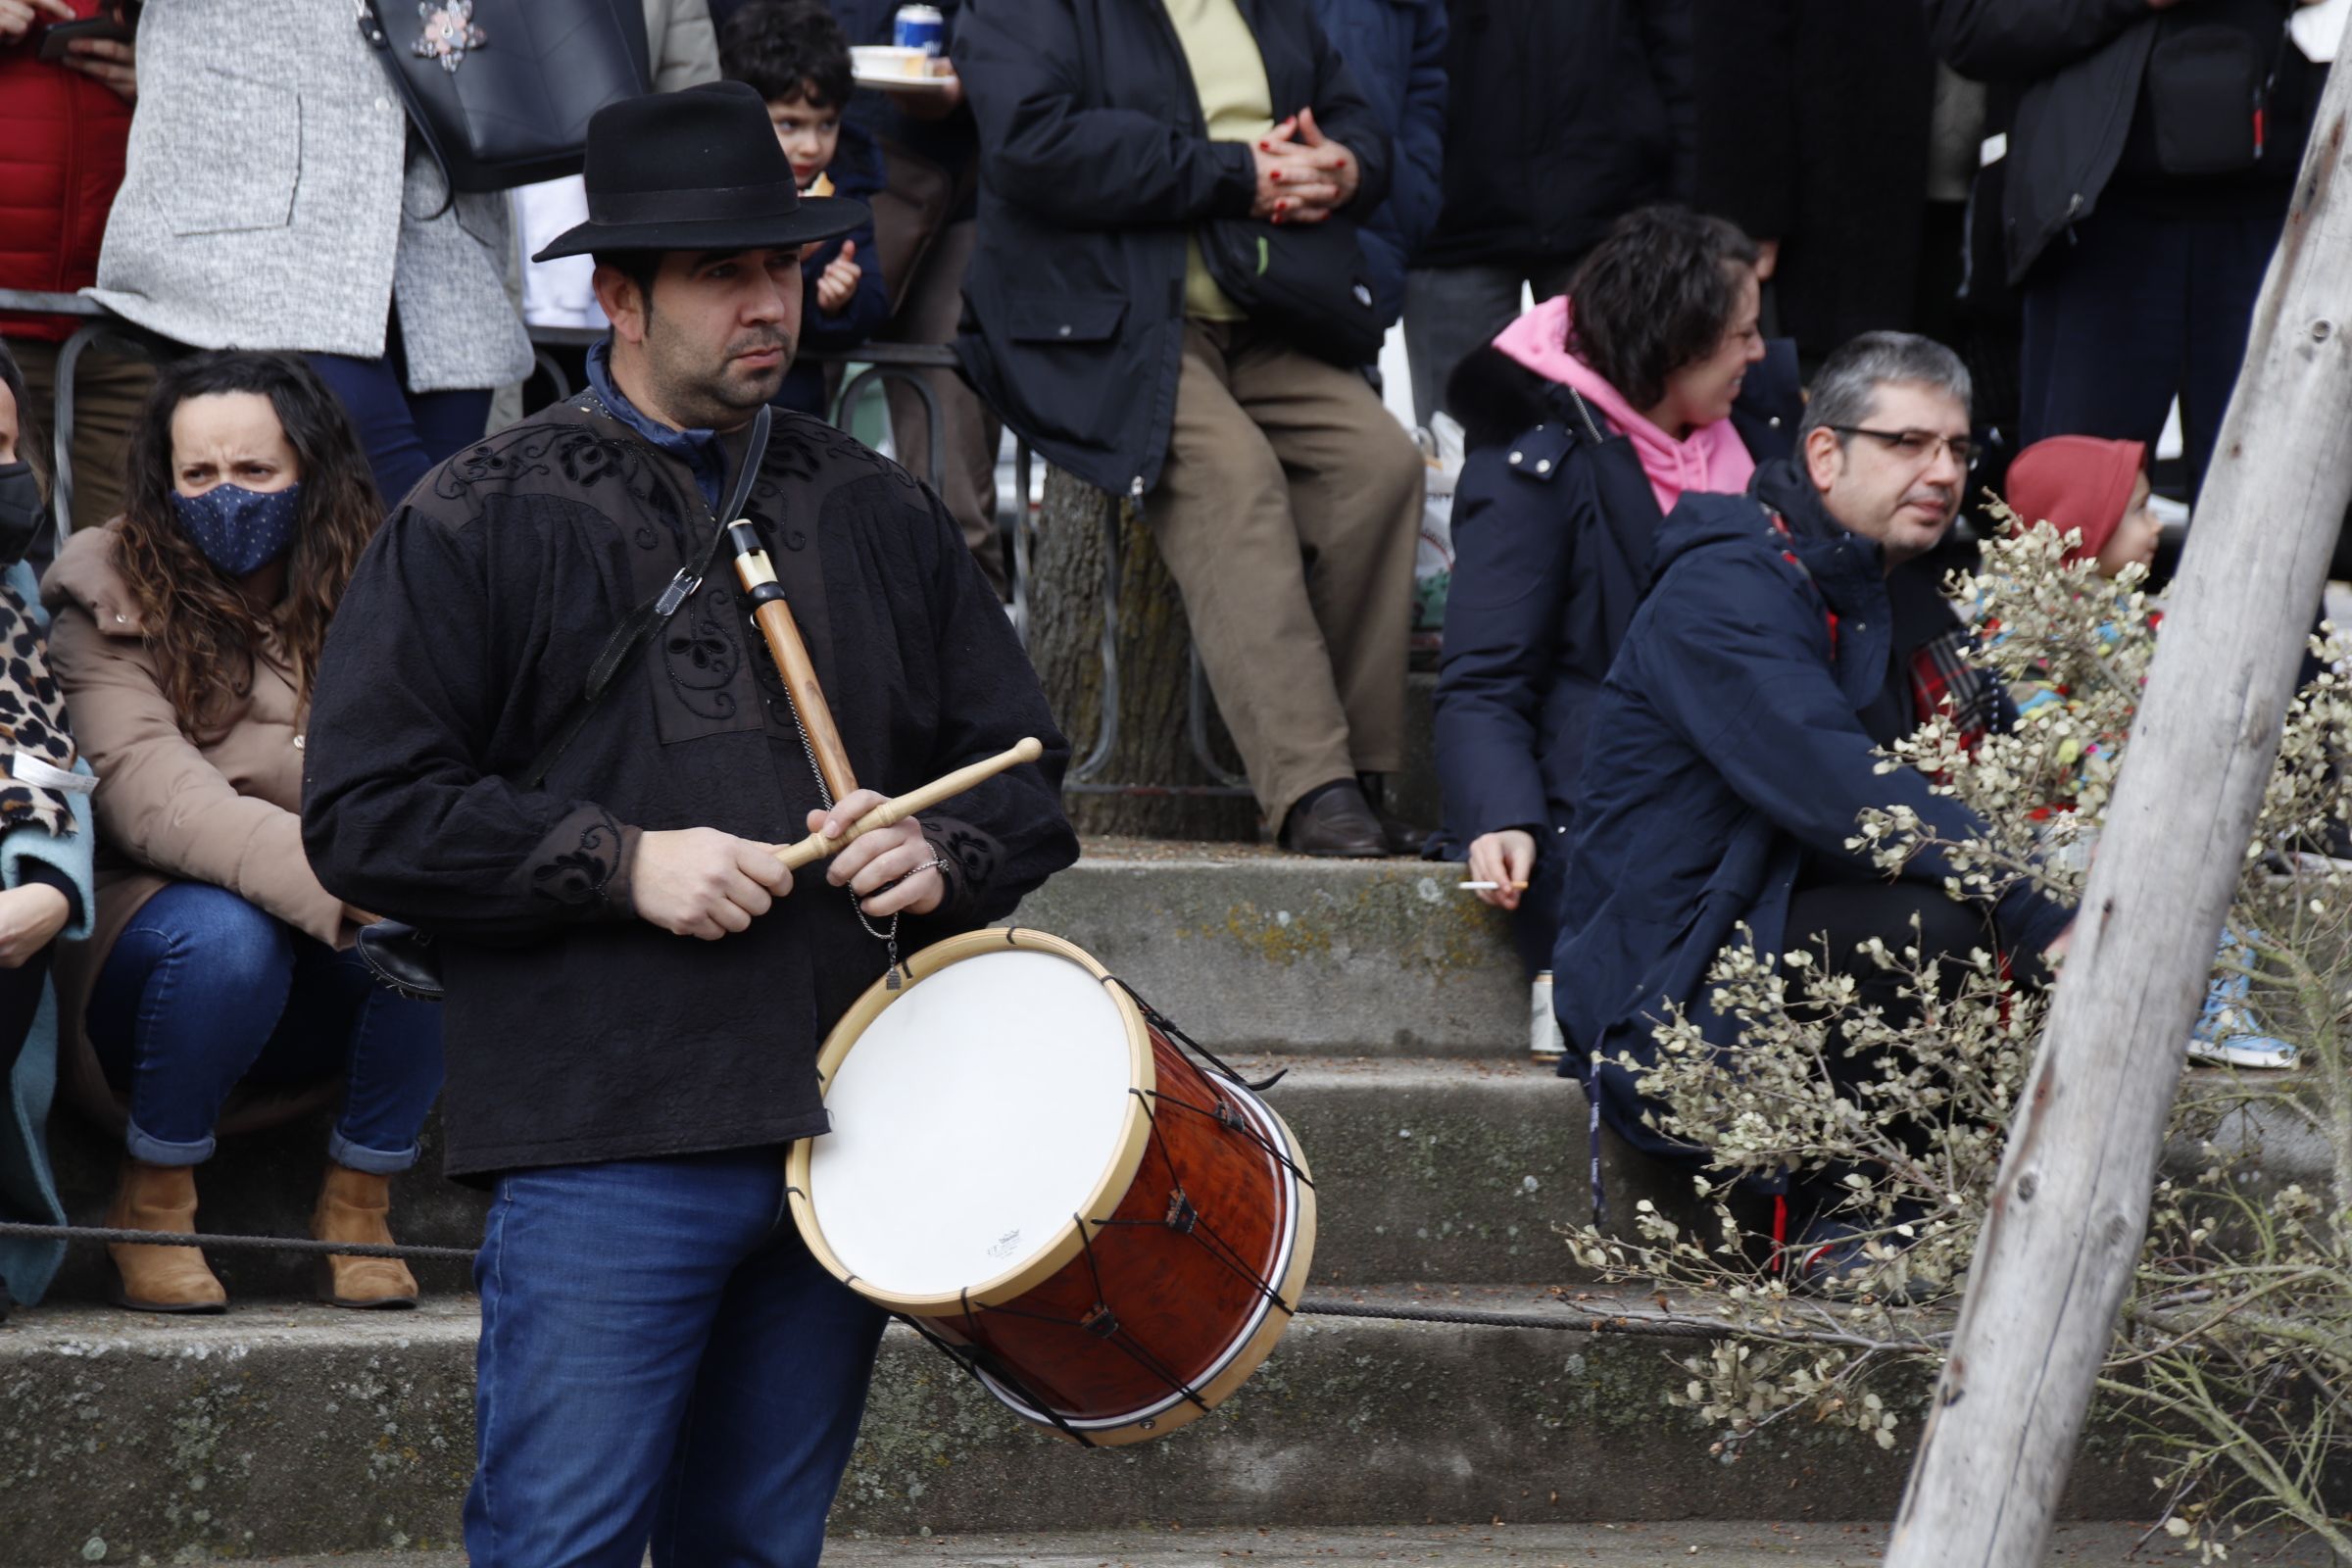 Matanza típica de Guijuelo al son de la gaita y el tamboril | Fotos: Andrea M